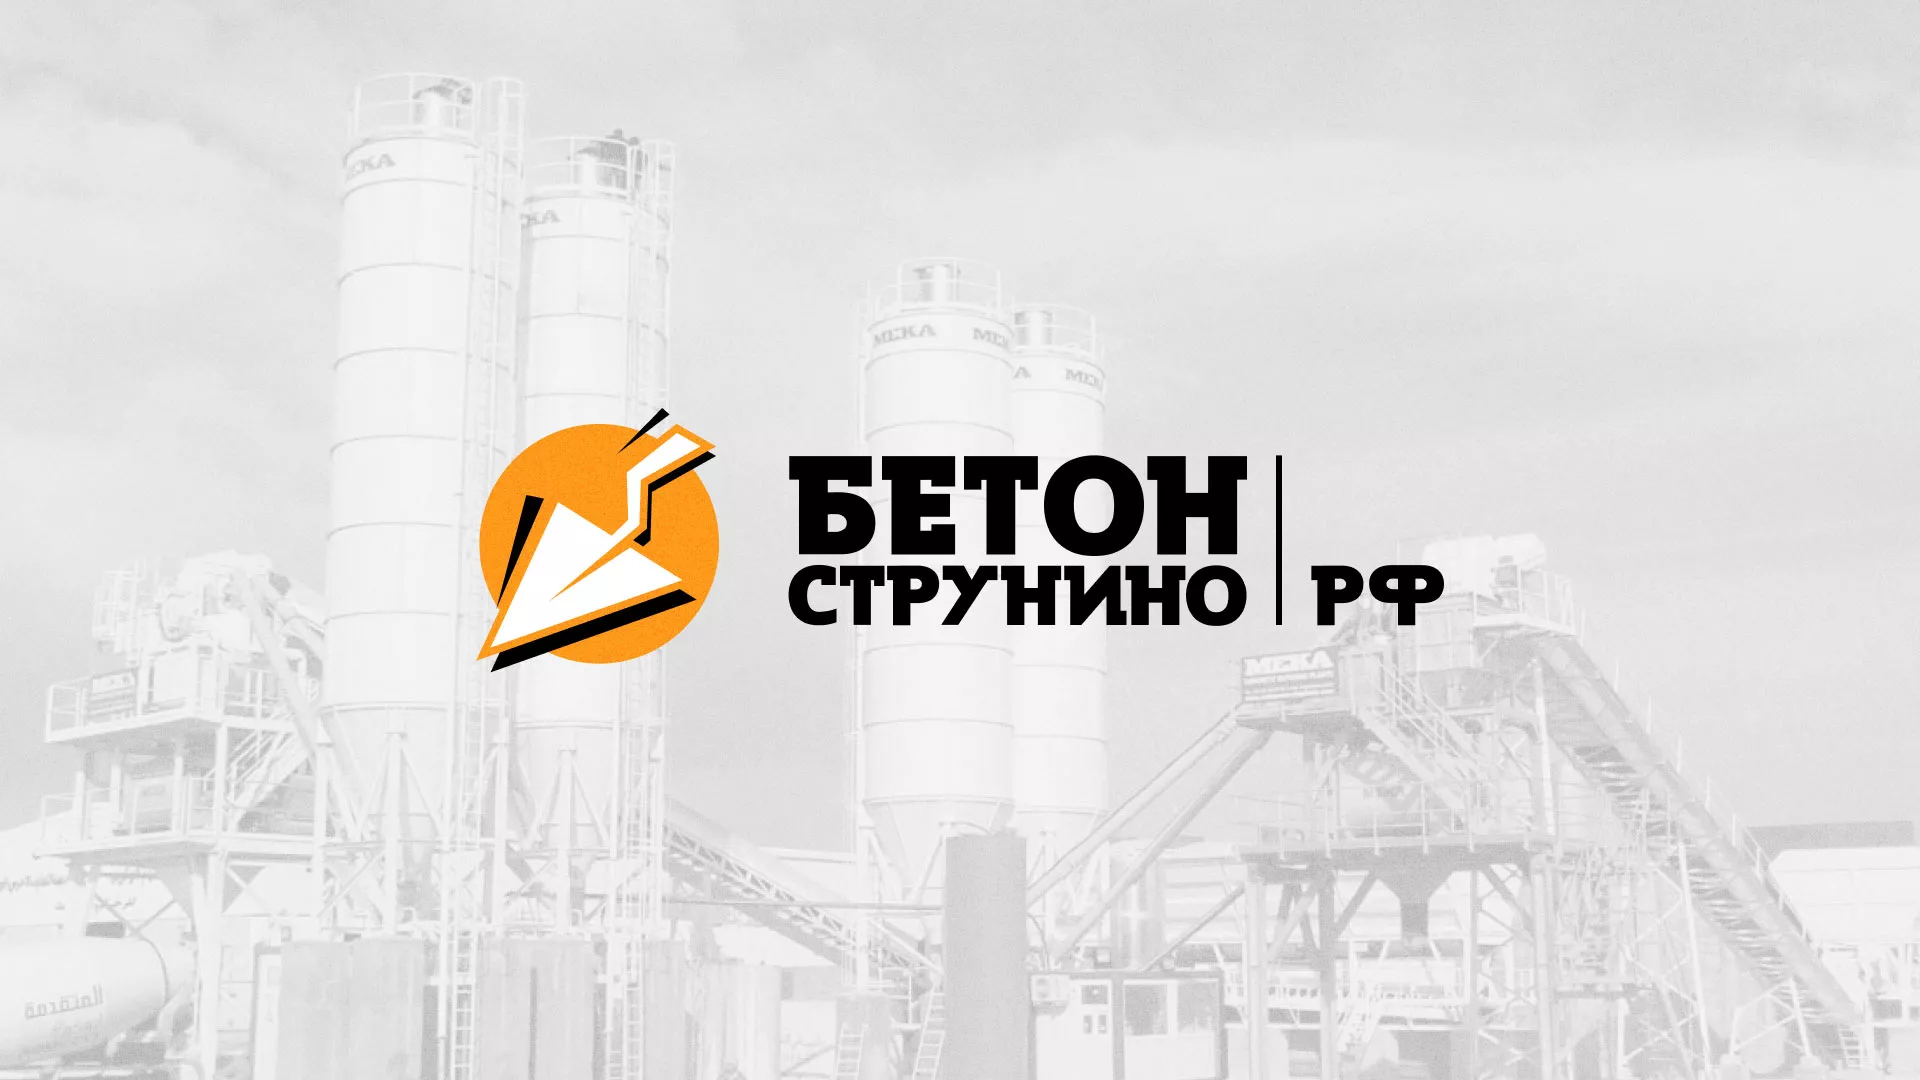 Разработка логотипа для бетонного завода в Болгаре